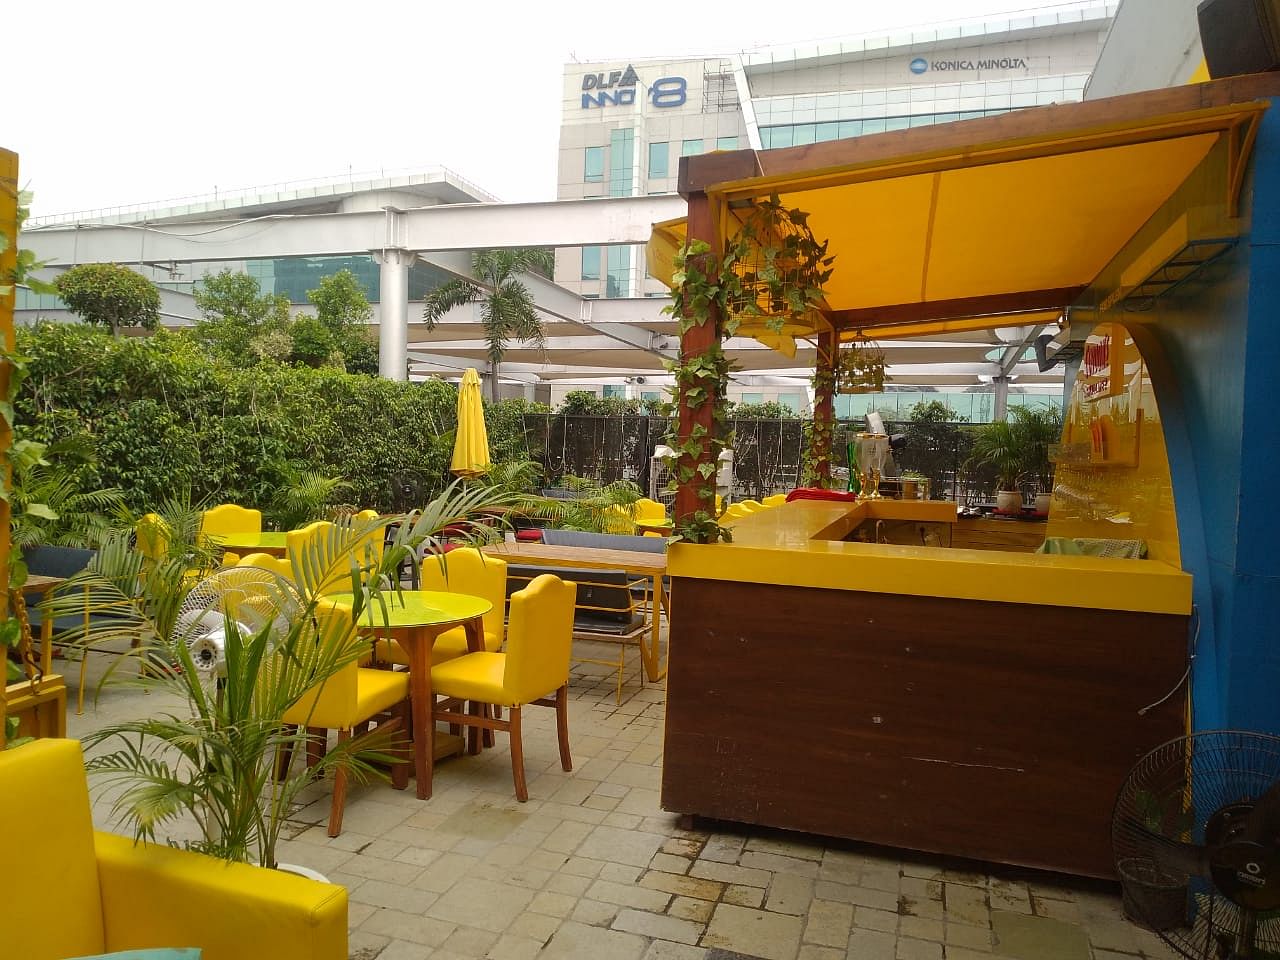 Raasta Cafe in DLF Cyber Hub, Gurgaon